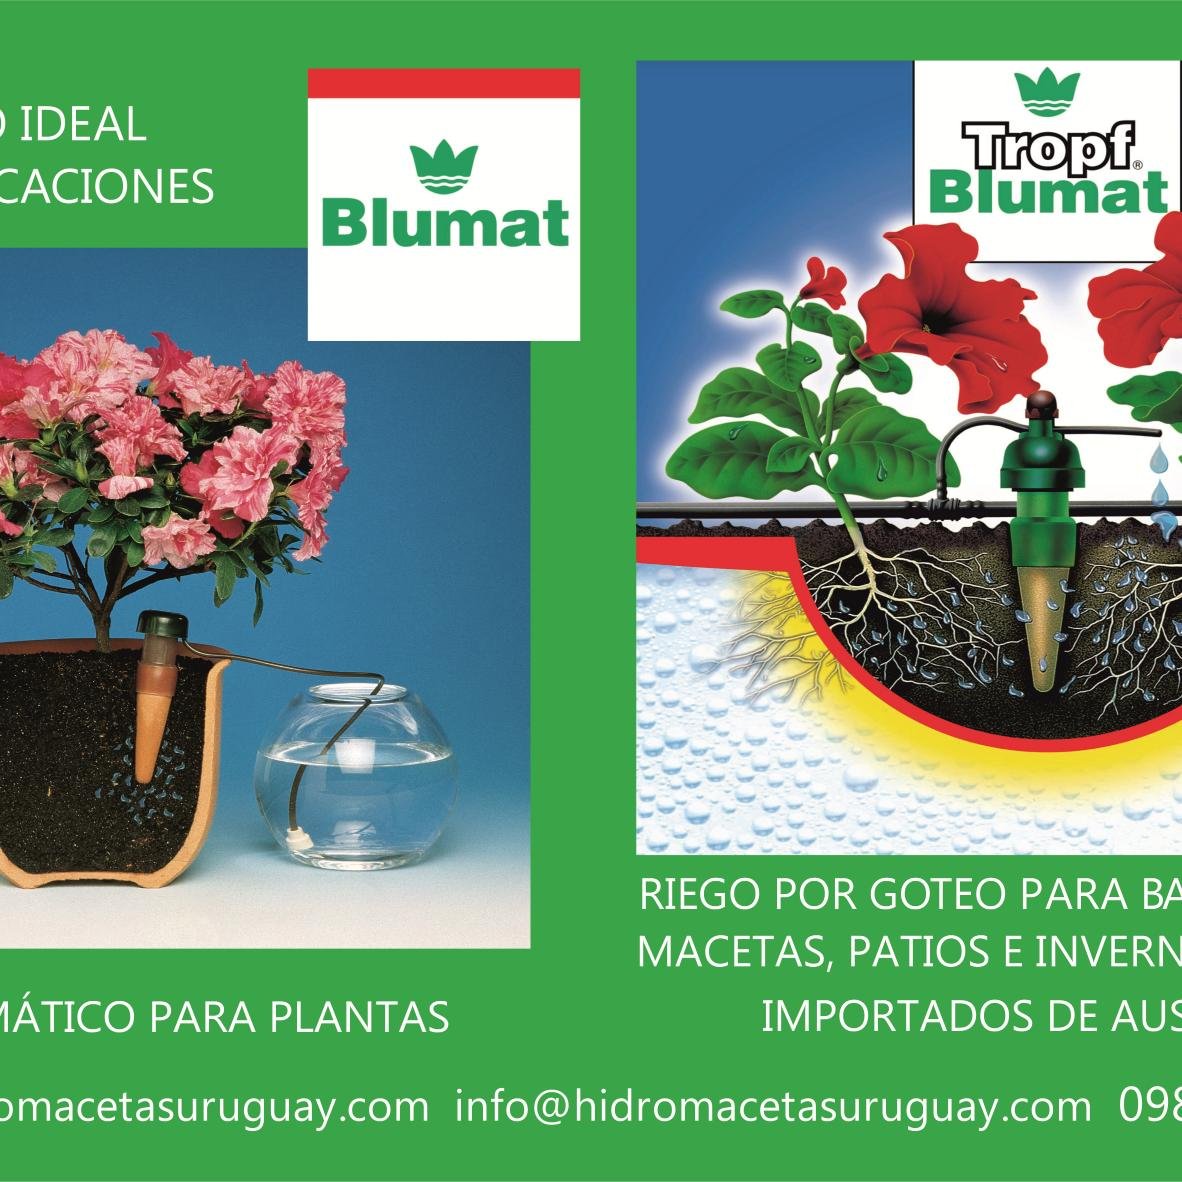 Si te vas de vacaciones instala Blumat: Regadores inteligentes y ecológicos p plantas en macetas (interior o exterior).Importados de Austria.